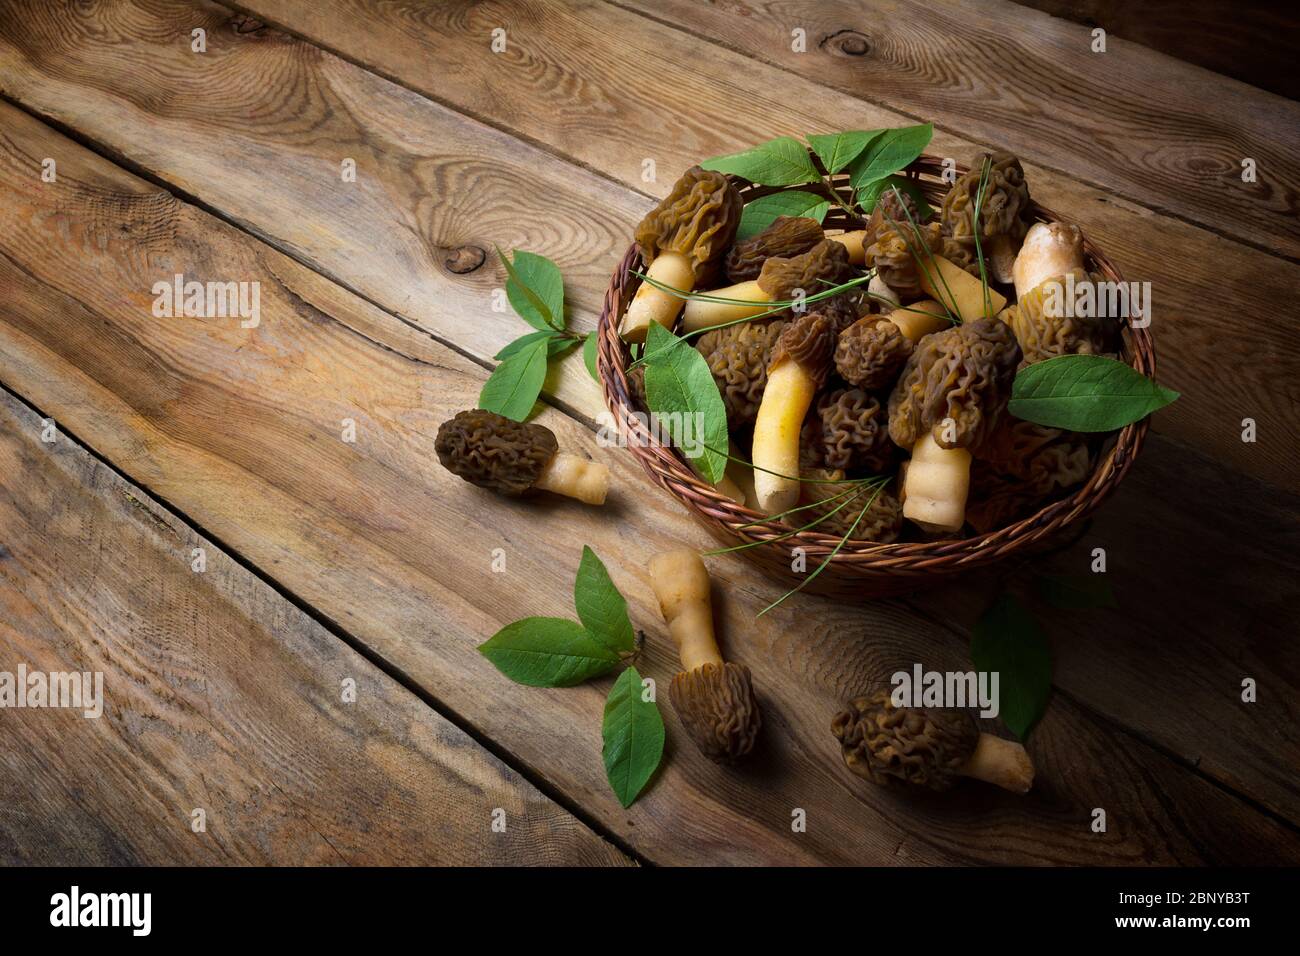 Panier en osier avec cueillette de morilles et de feuilles vertes dans une forêt sauvage sur fond de bois rustique. Concept végétarien de nourriture saine Banque D'Images